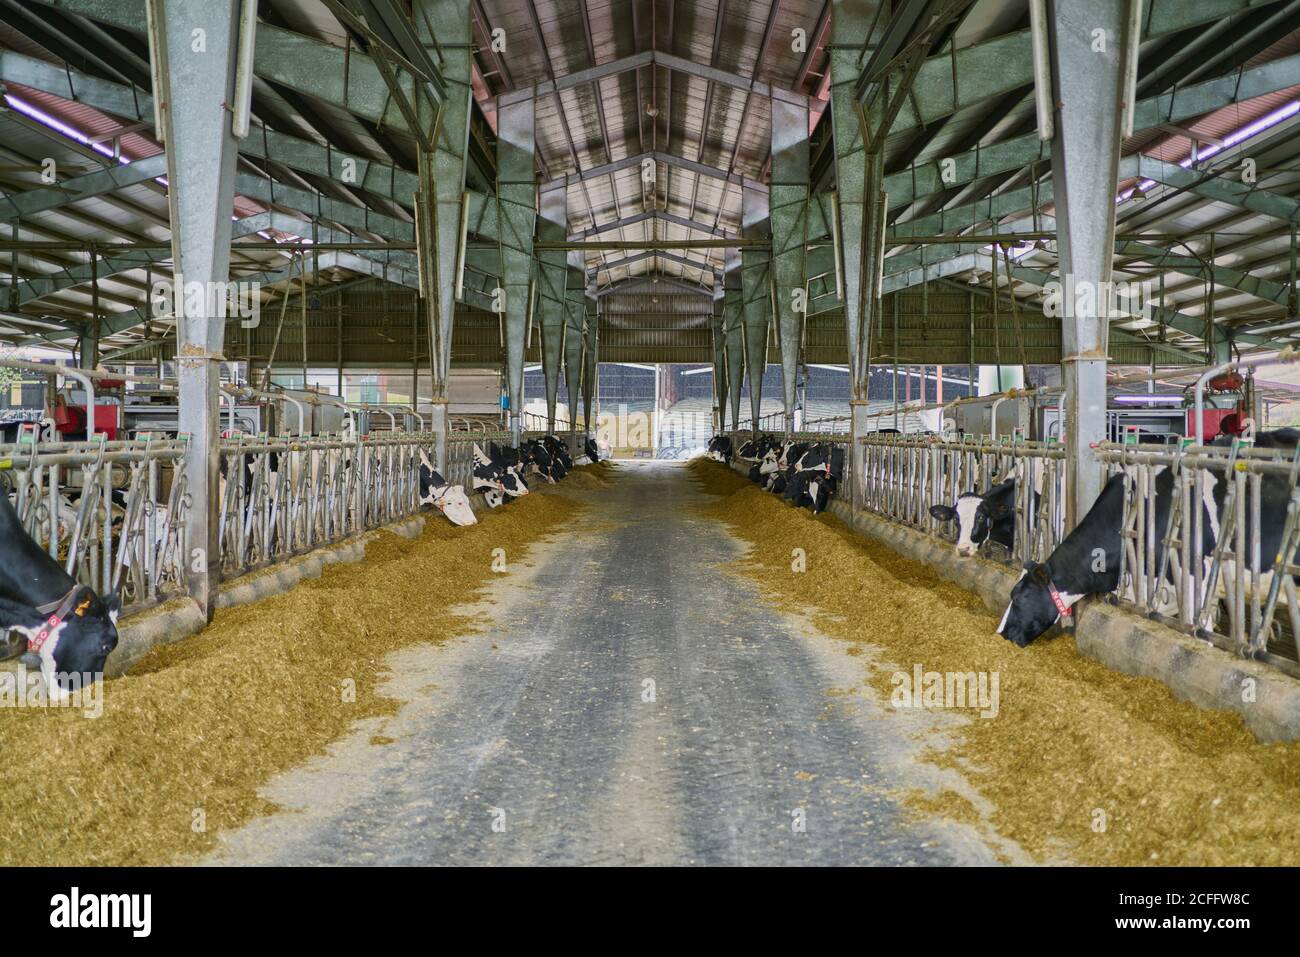 Interieur des modernen geräumigen Kuhstall mit Kühen in Ständen Essen Heu in der Nähe von Metallzaun unter Metalldach auf modern Bauernhof auf dem Land Stockfoto